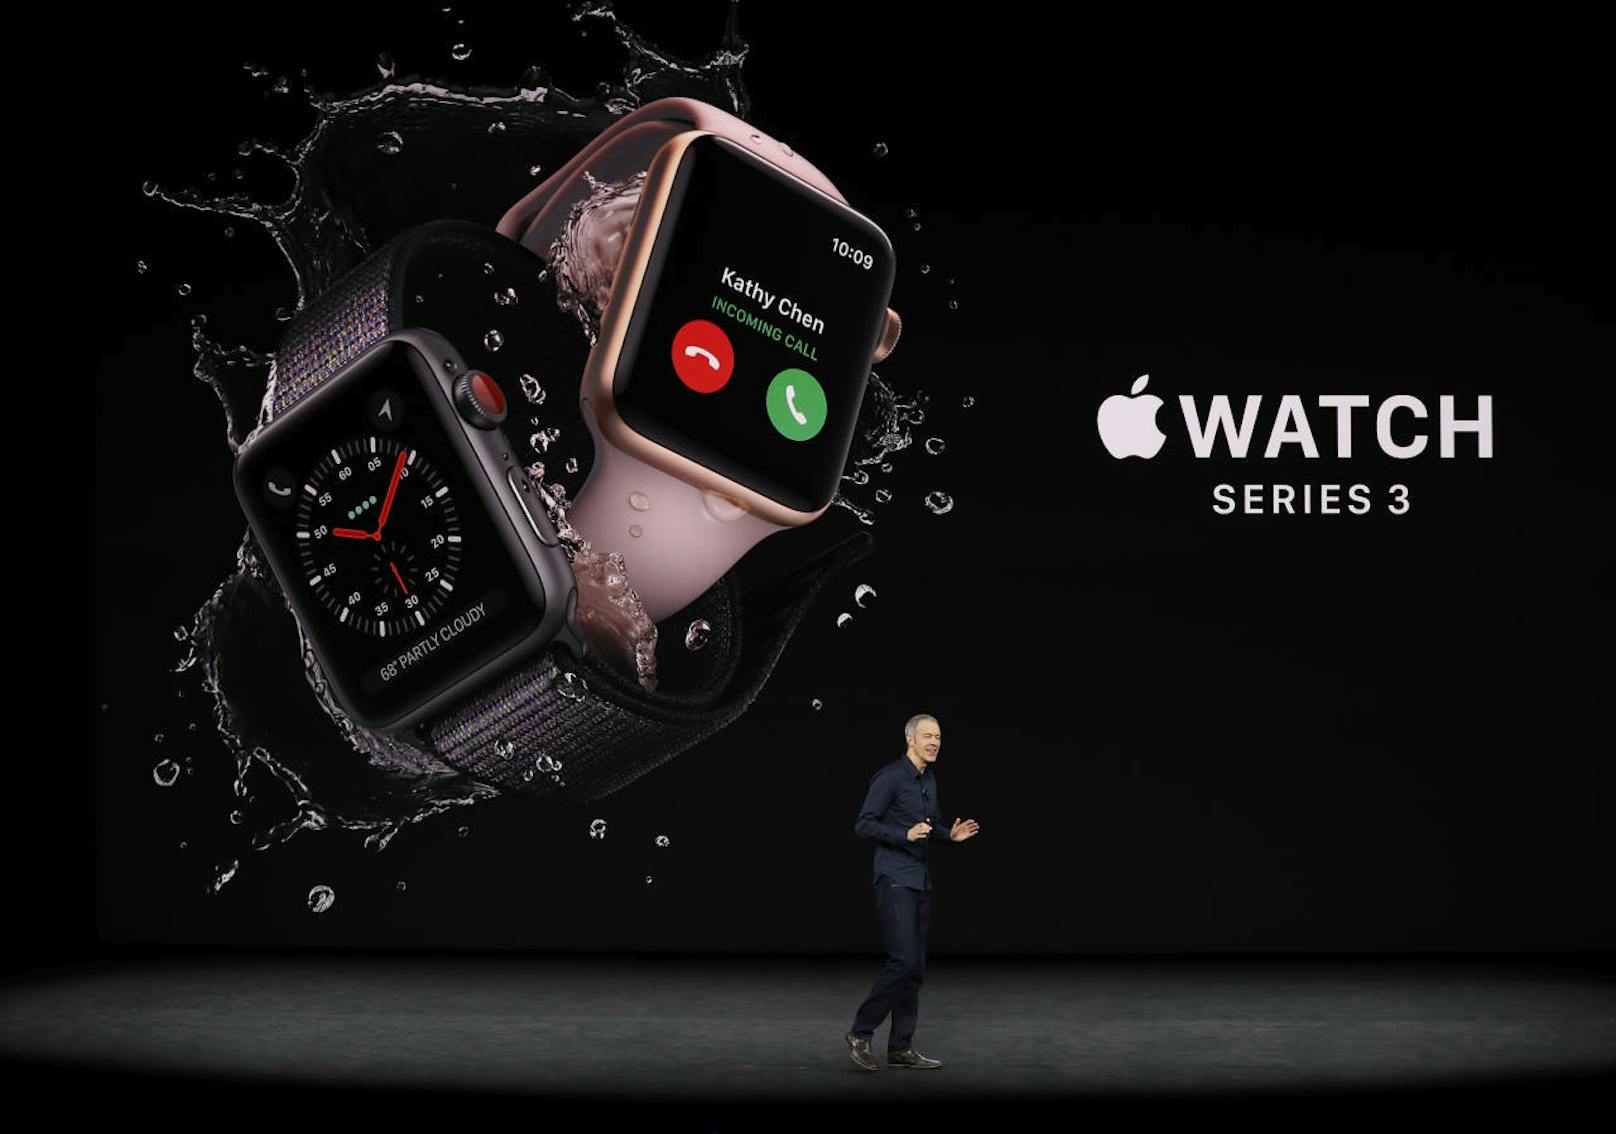 <b>Series 3 Apple Watch:</b> Im Vergleich zum aktuellen Modell war die erste Generation noch eher lahm und nicht für die Nutzung im Wasser geeignet. Der Prozessor der Series 3 sorgt hingegen für ordentlich Leistung. Im neuen Modell steckt außerdem ein Höhensensor, der unter anderem zählt, wie viele Treppenstufen man zurücklegt. <a href="https://www.heute.at/digital/multimedia/story/Das-kann-die-Apple-Watch-Series-3-57494862">"Heute" titelte: Das kann die Apple Watch Series 3</a>